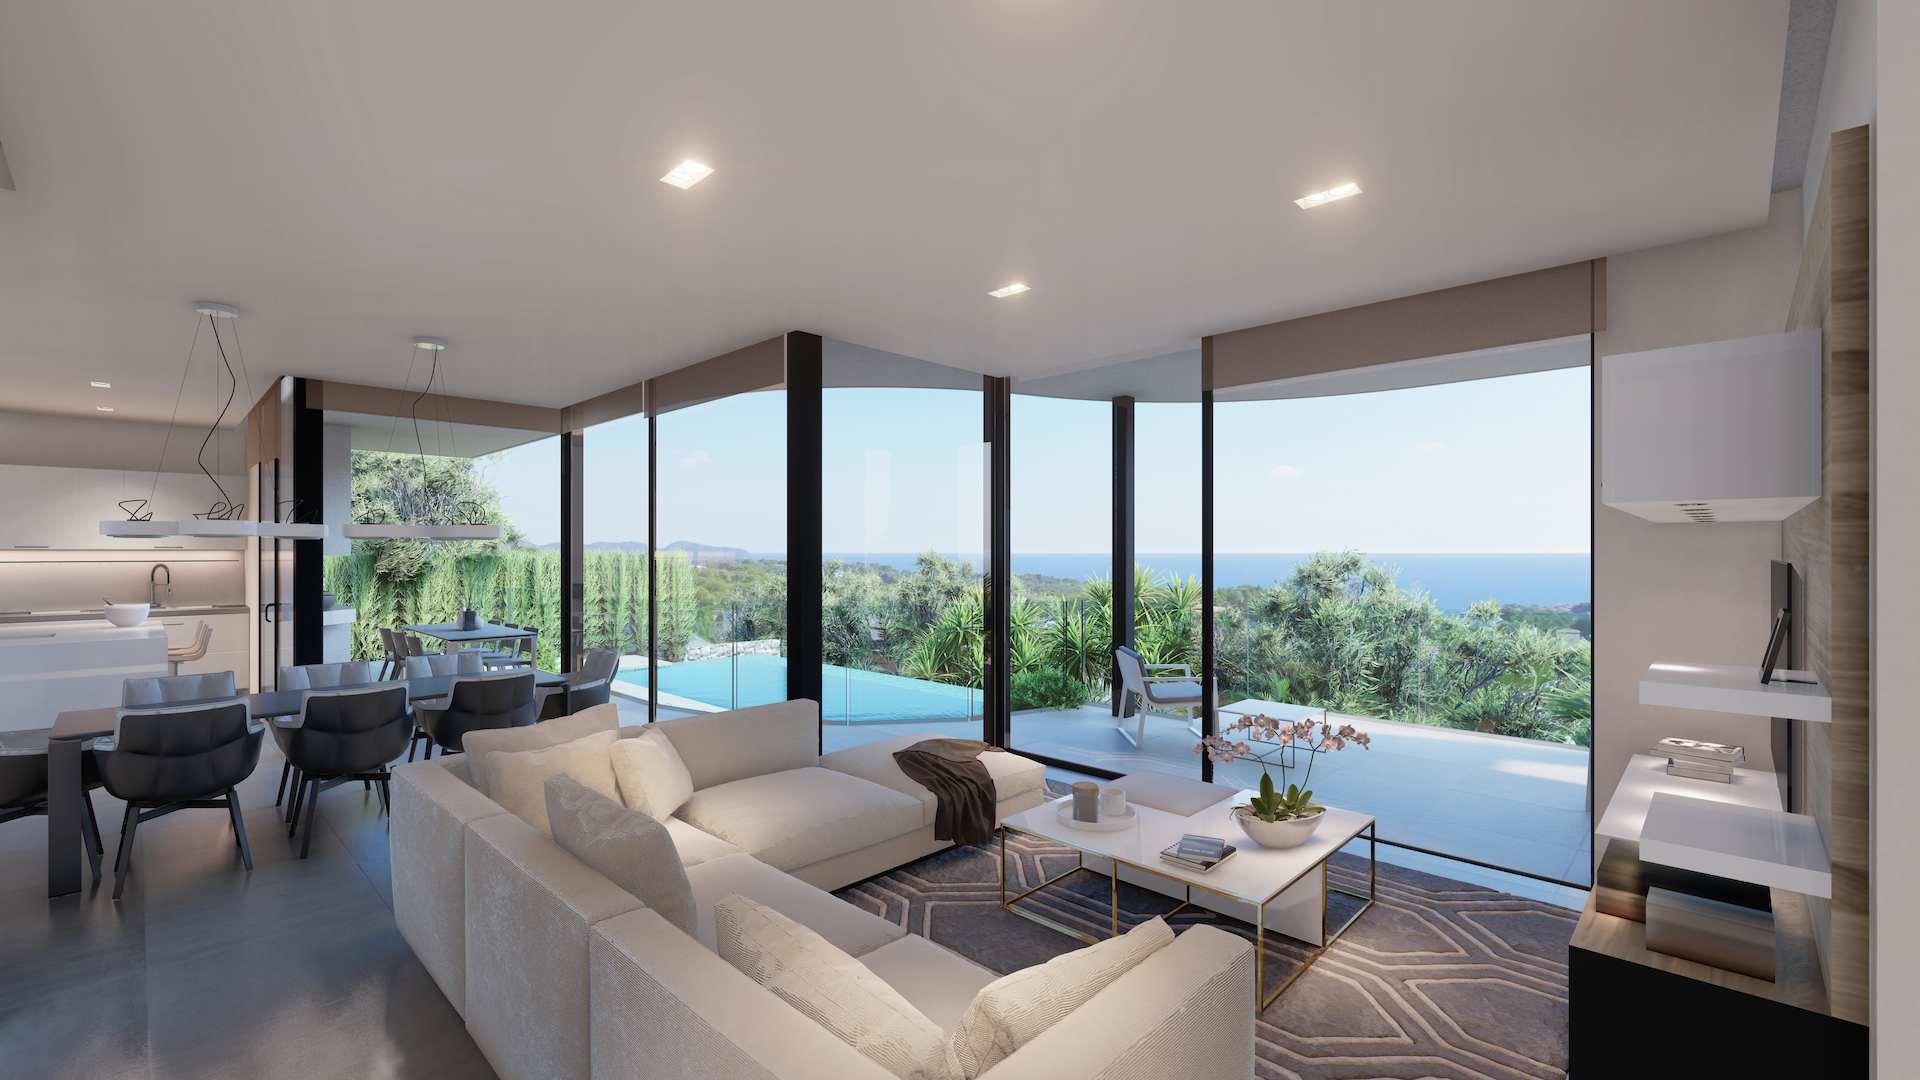 Geweldig nieuw modern huis met overloopzwembad en uitzicht op zee